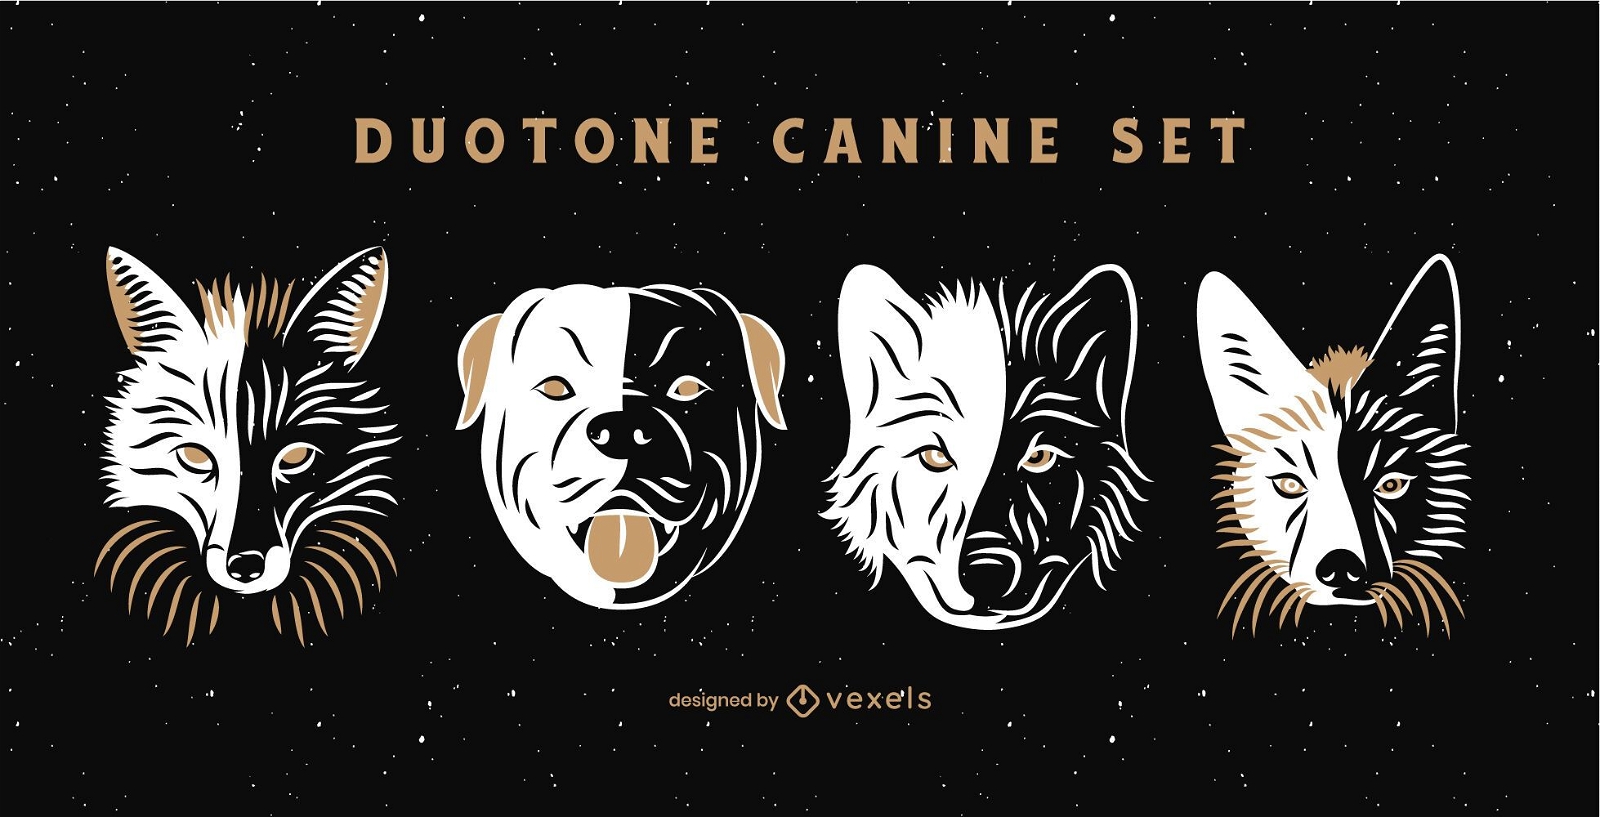 Duotone canine set 